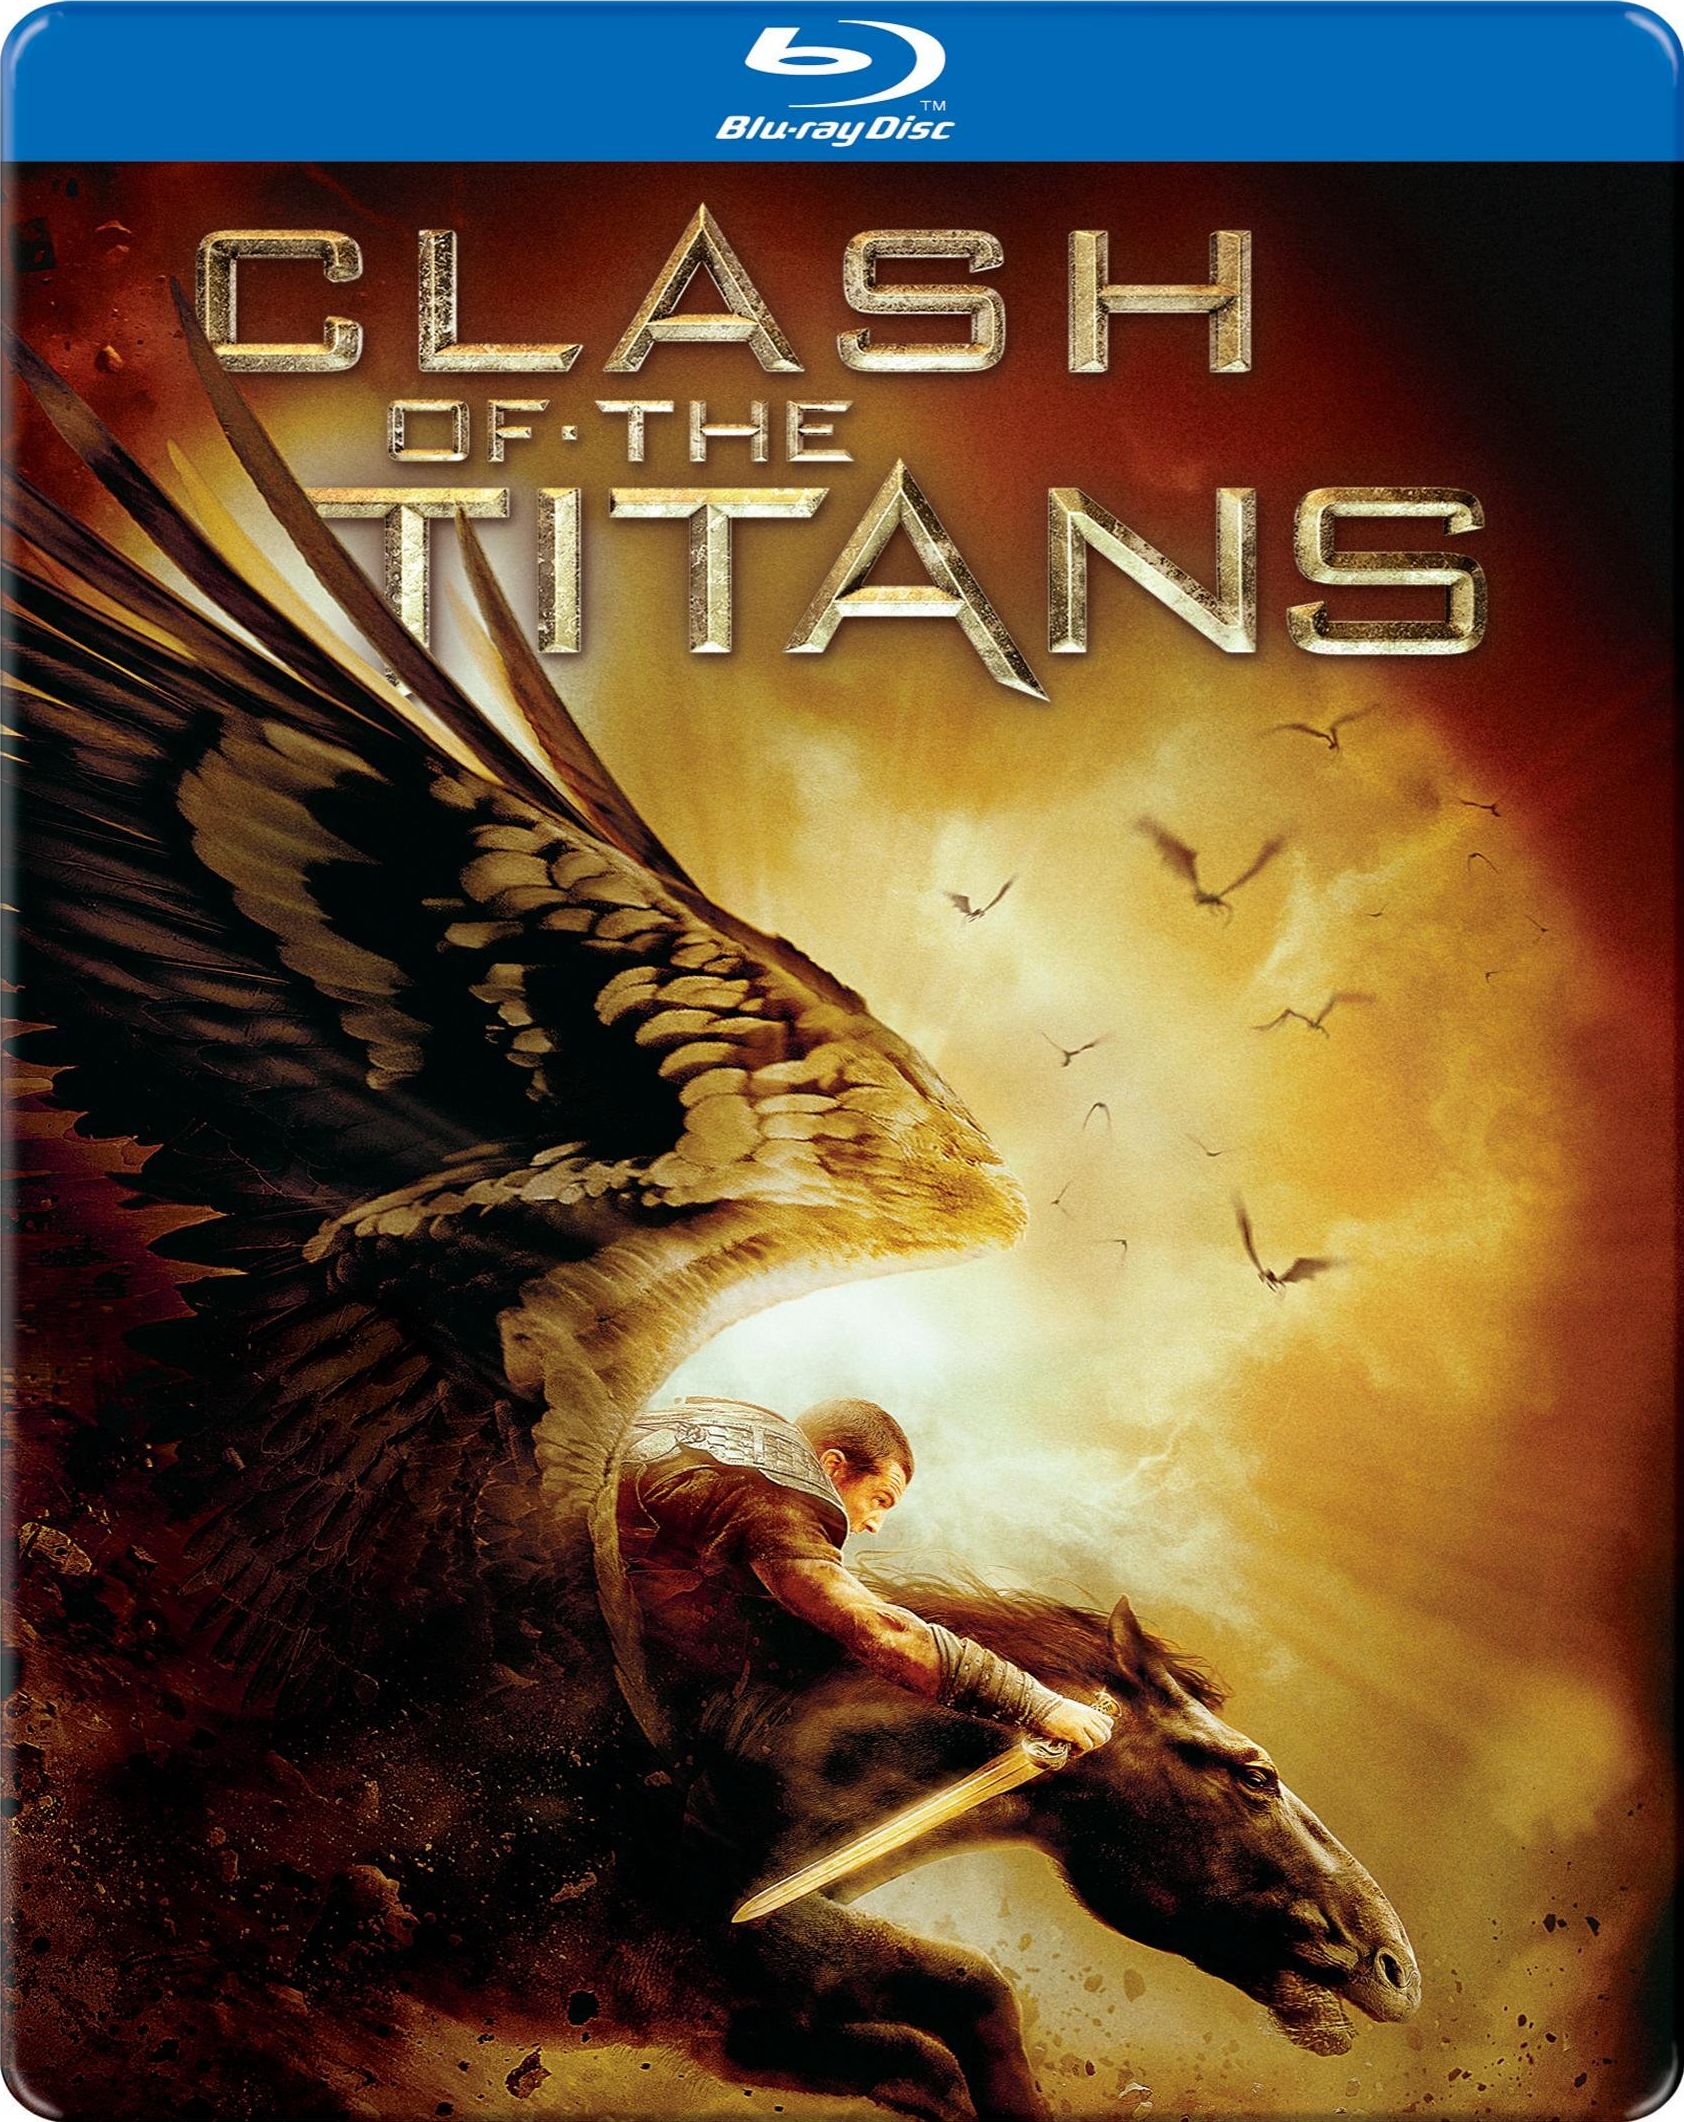 Furia de titanes (2010) - IMDb  Clash of the titans, Hades, Ralph